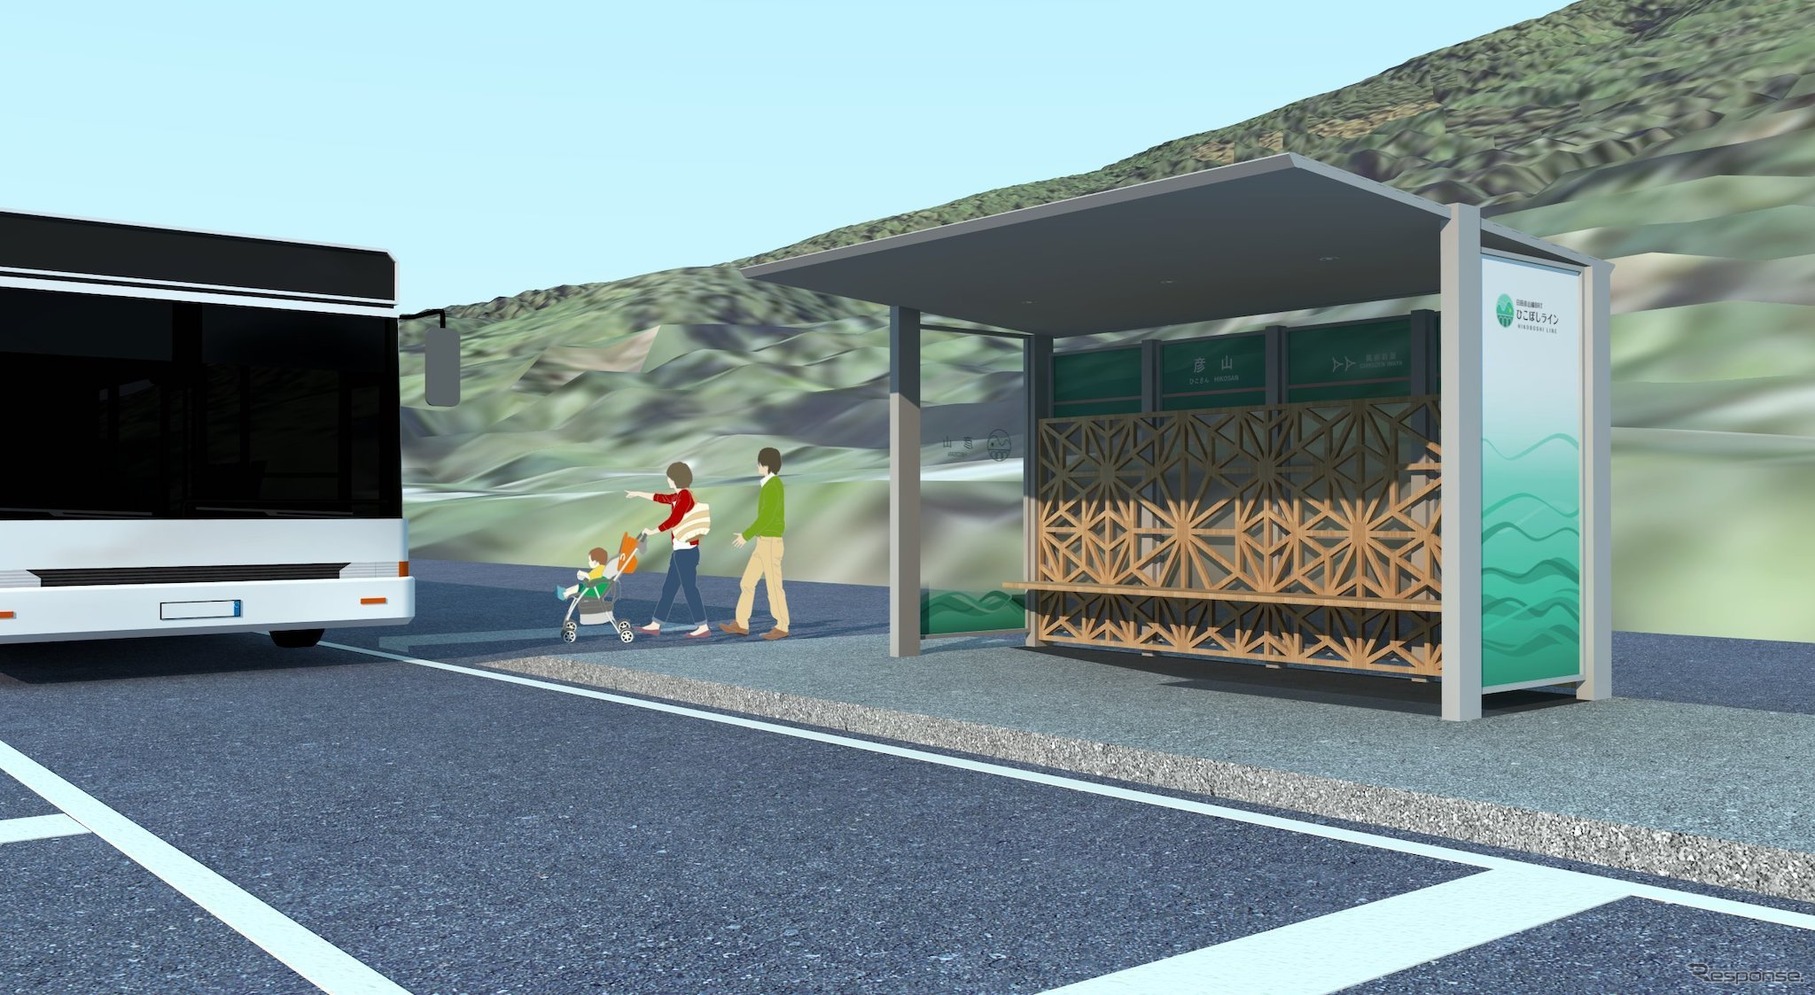 待合ブースとバスを組み合わせたイメージ。モデルは彦山駅。